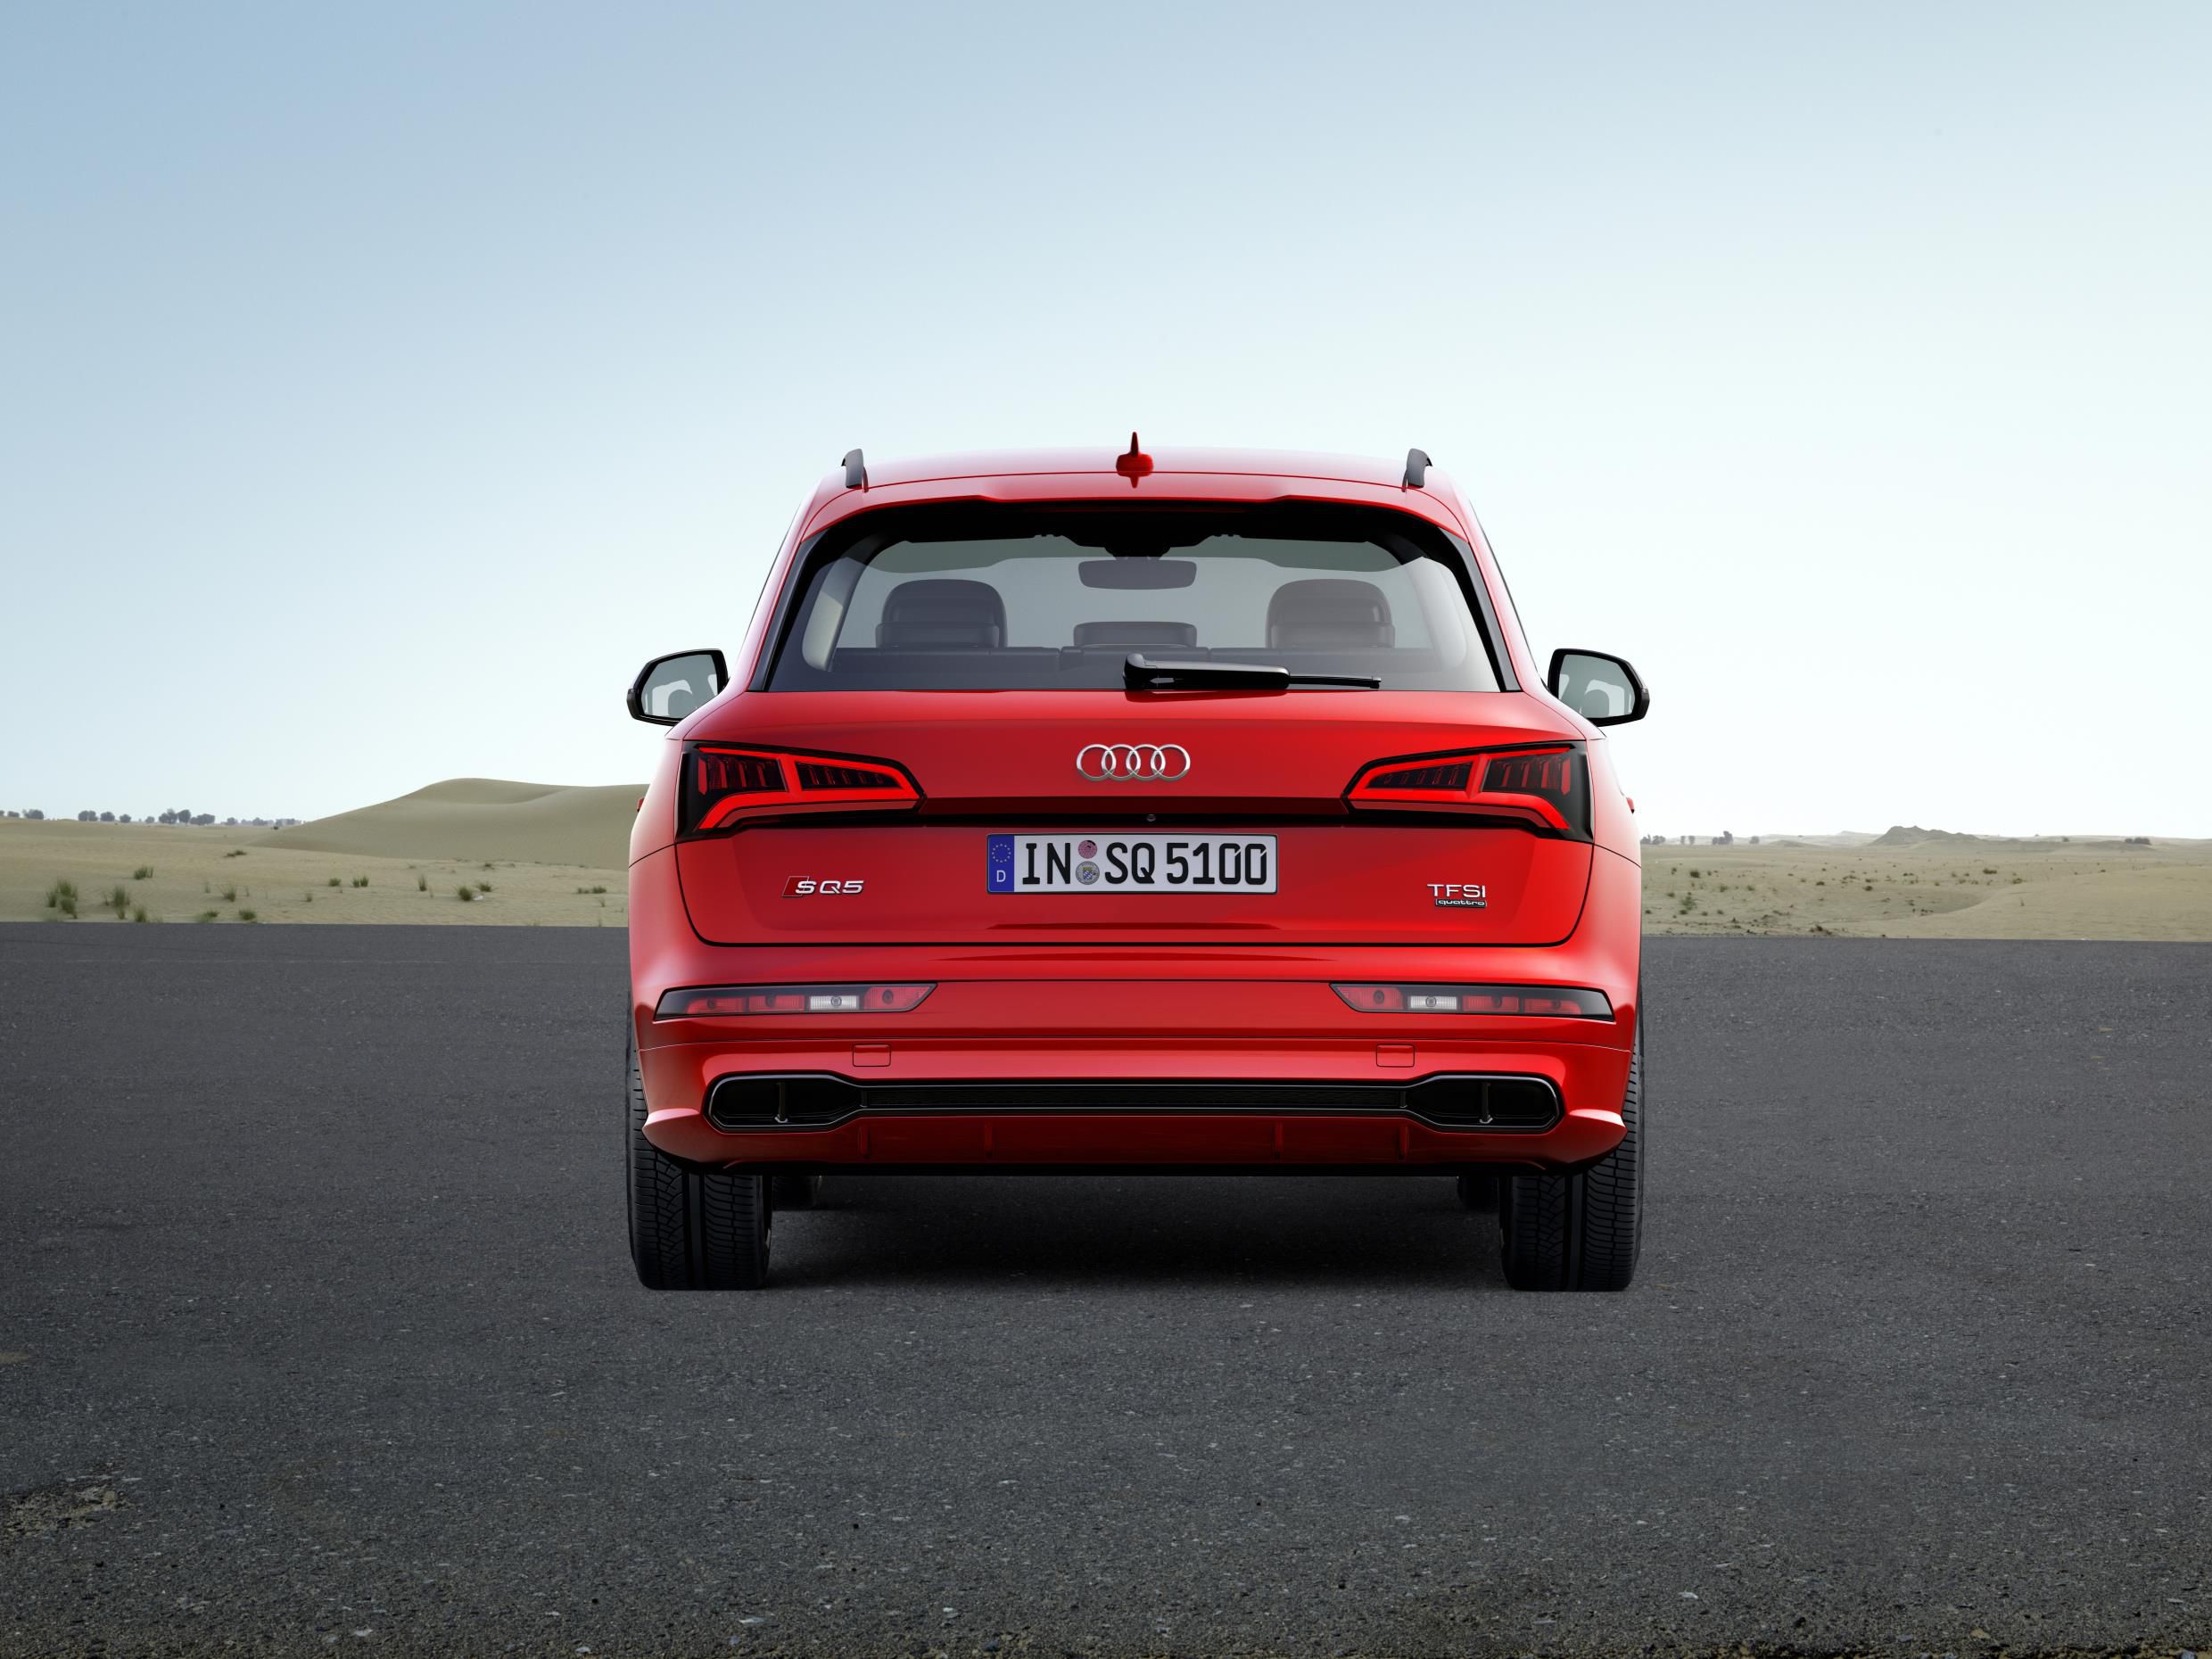 Audi SQ5 rear in red